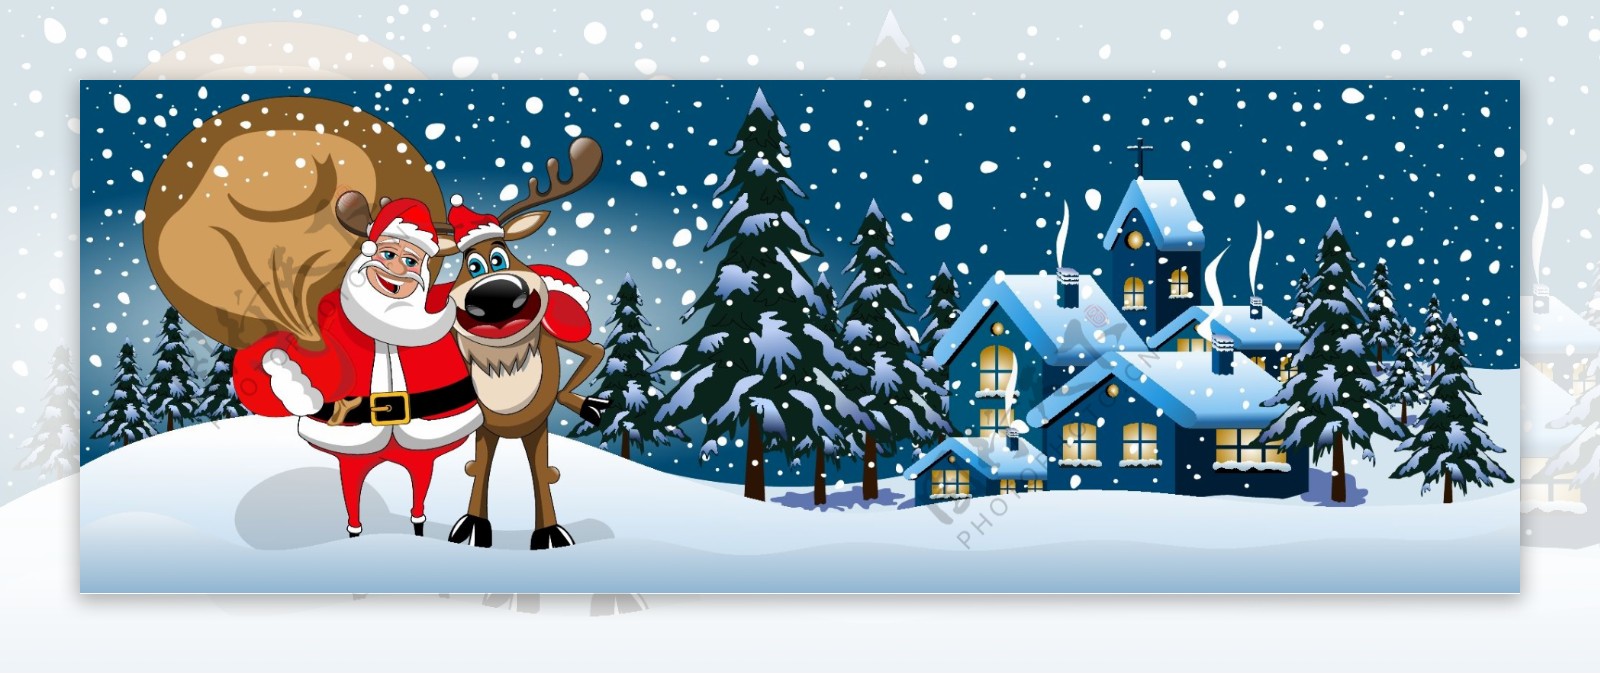 可爱的圣诞老人和驯鹿插画